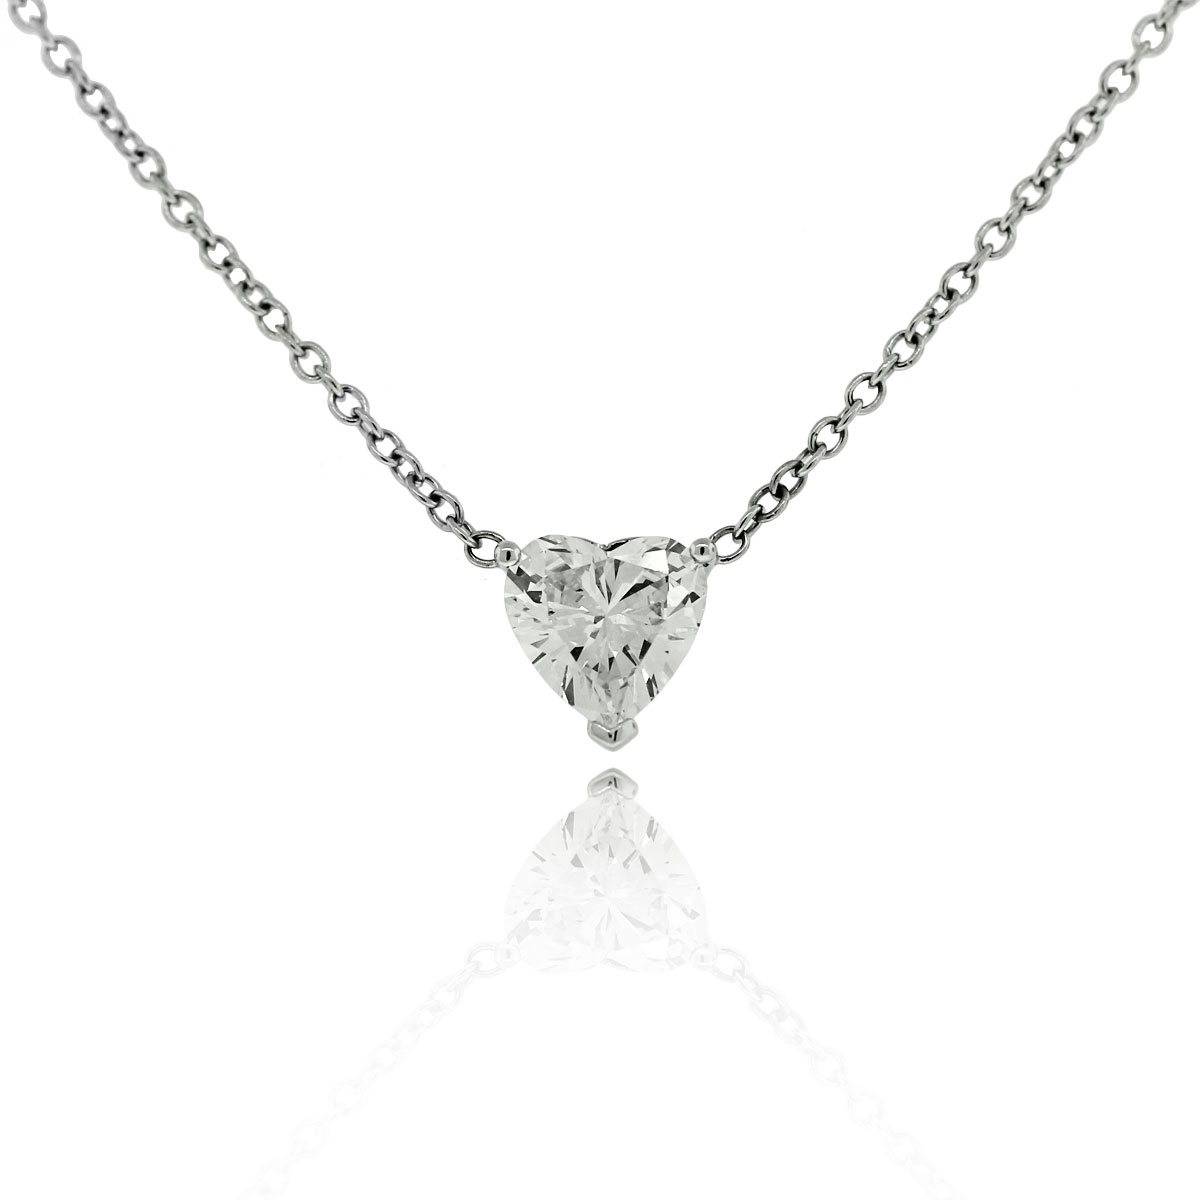 14k White Gold 1.69ctw GIA Diamond Pendant Necklace